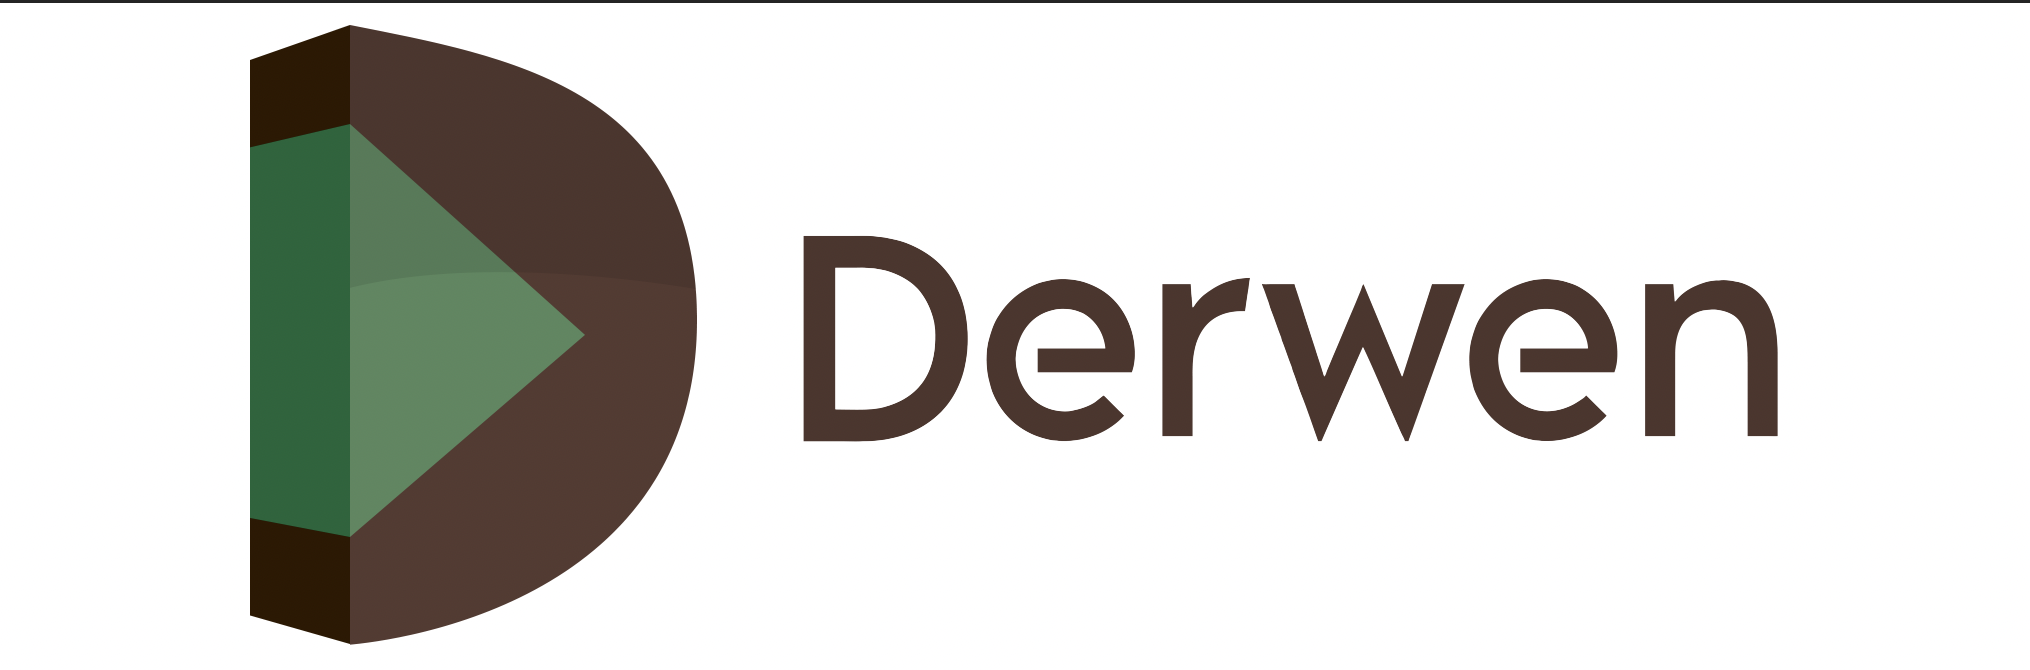 Derwen logo New 22